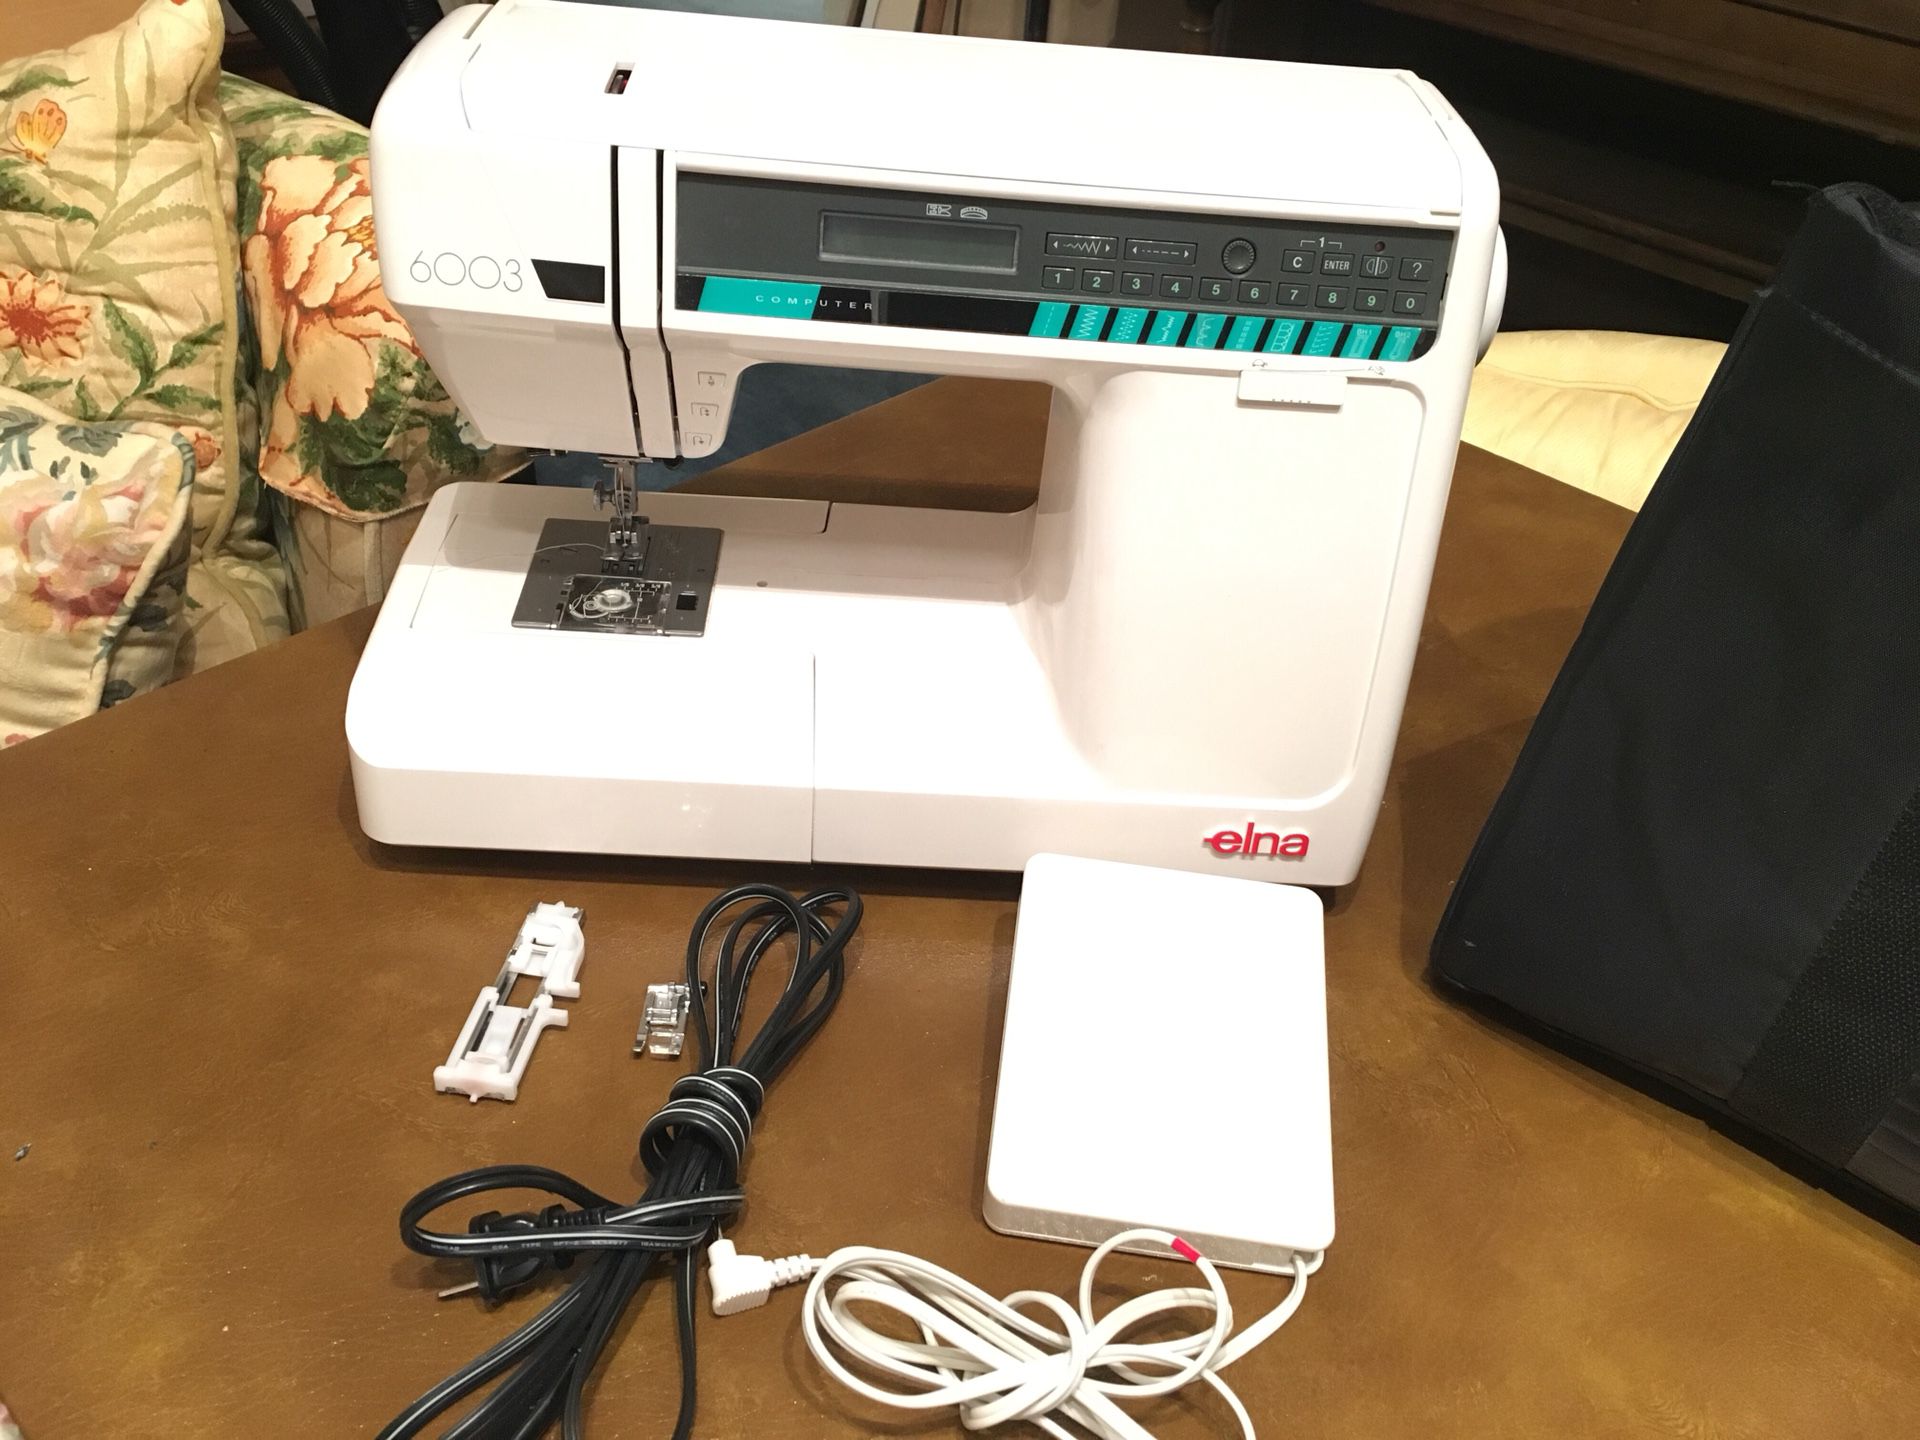 Elna 6003 sewing machine....like new